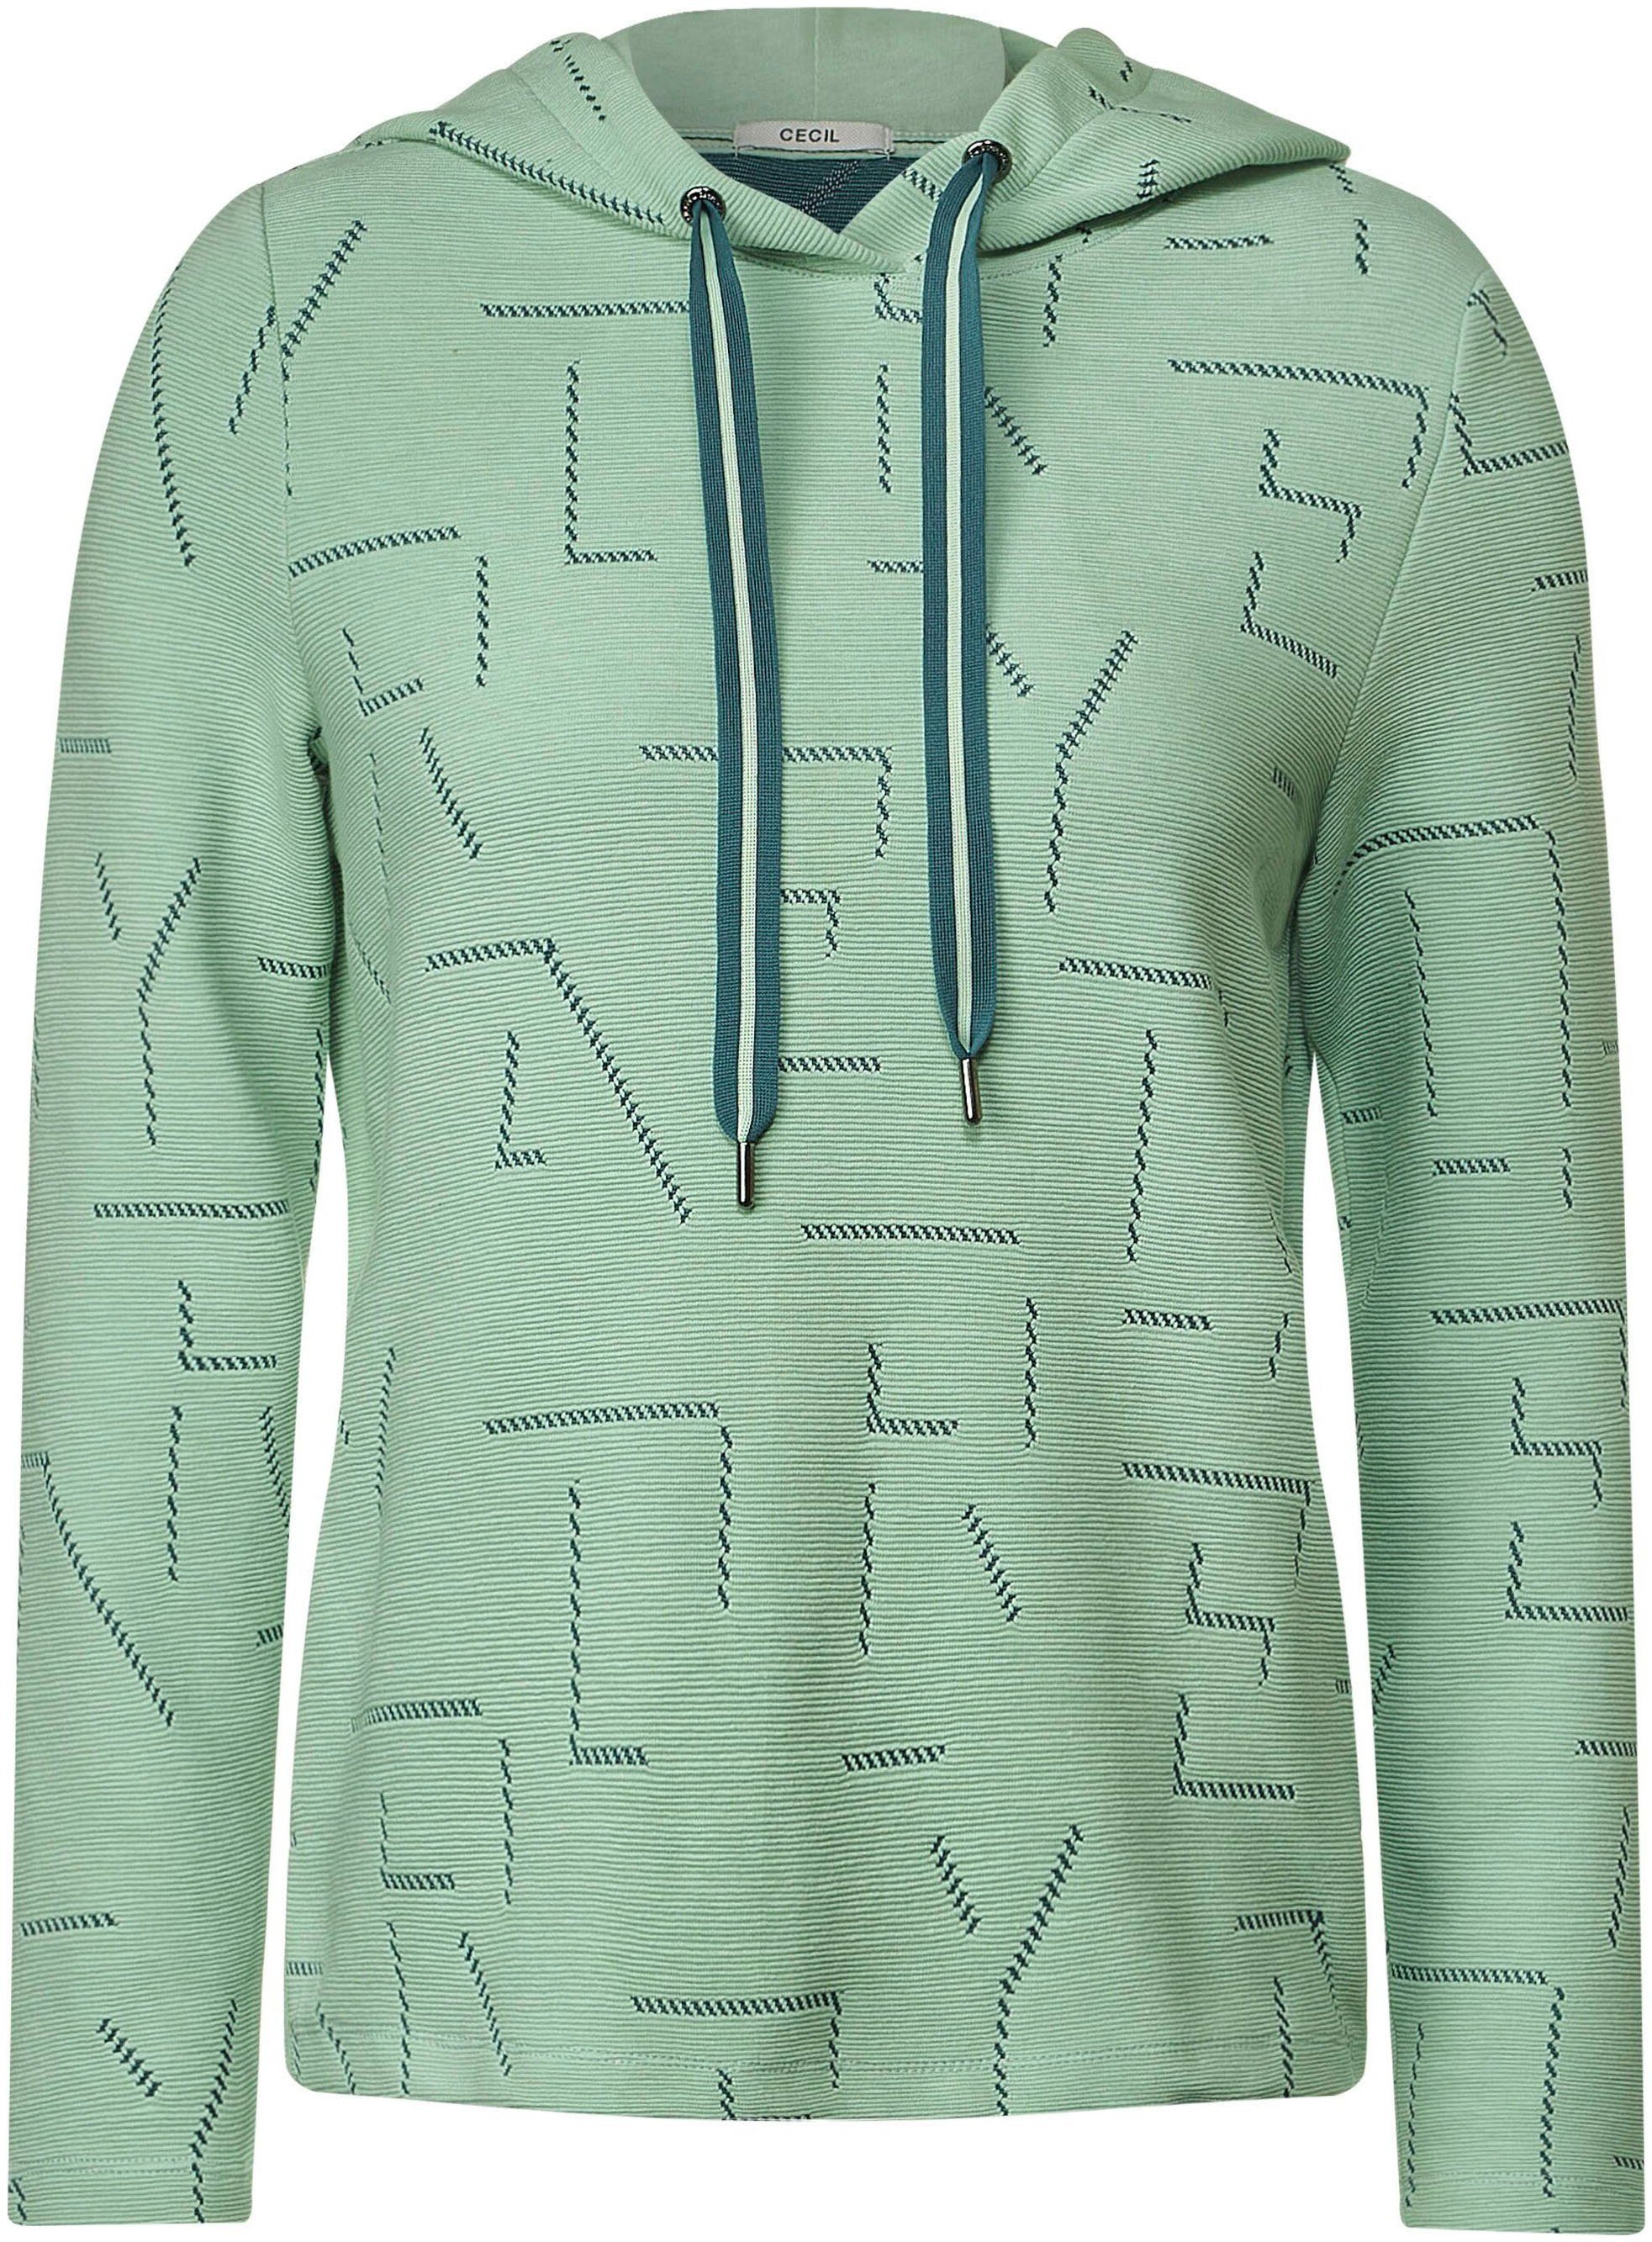 Cecil Sweatshirt mit einzigartigem Jacquard-Muster clear sage green